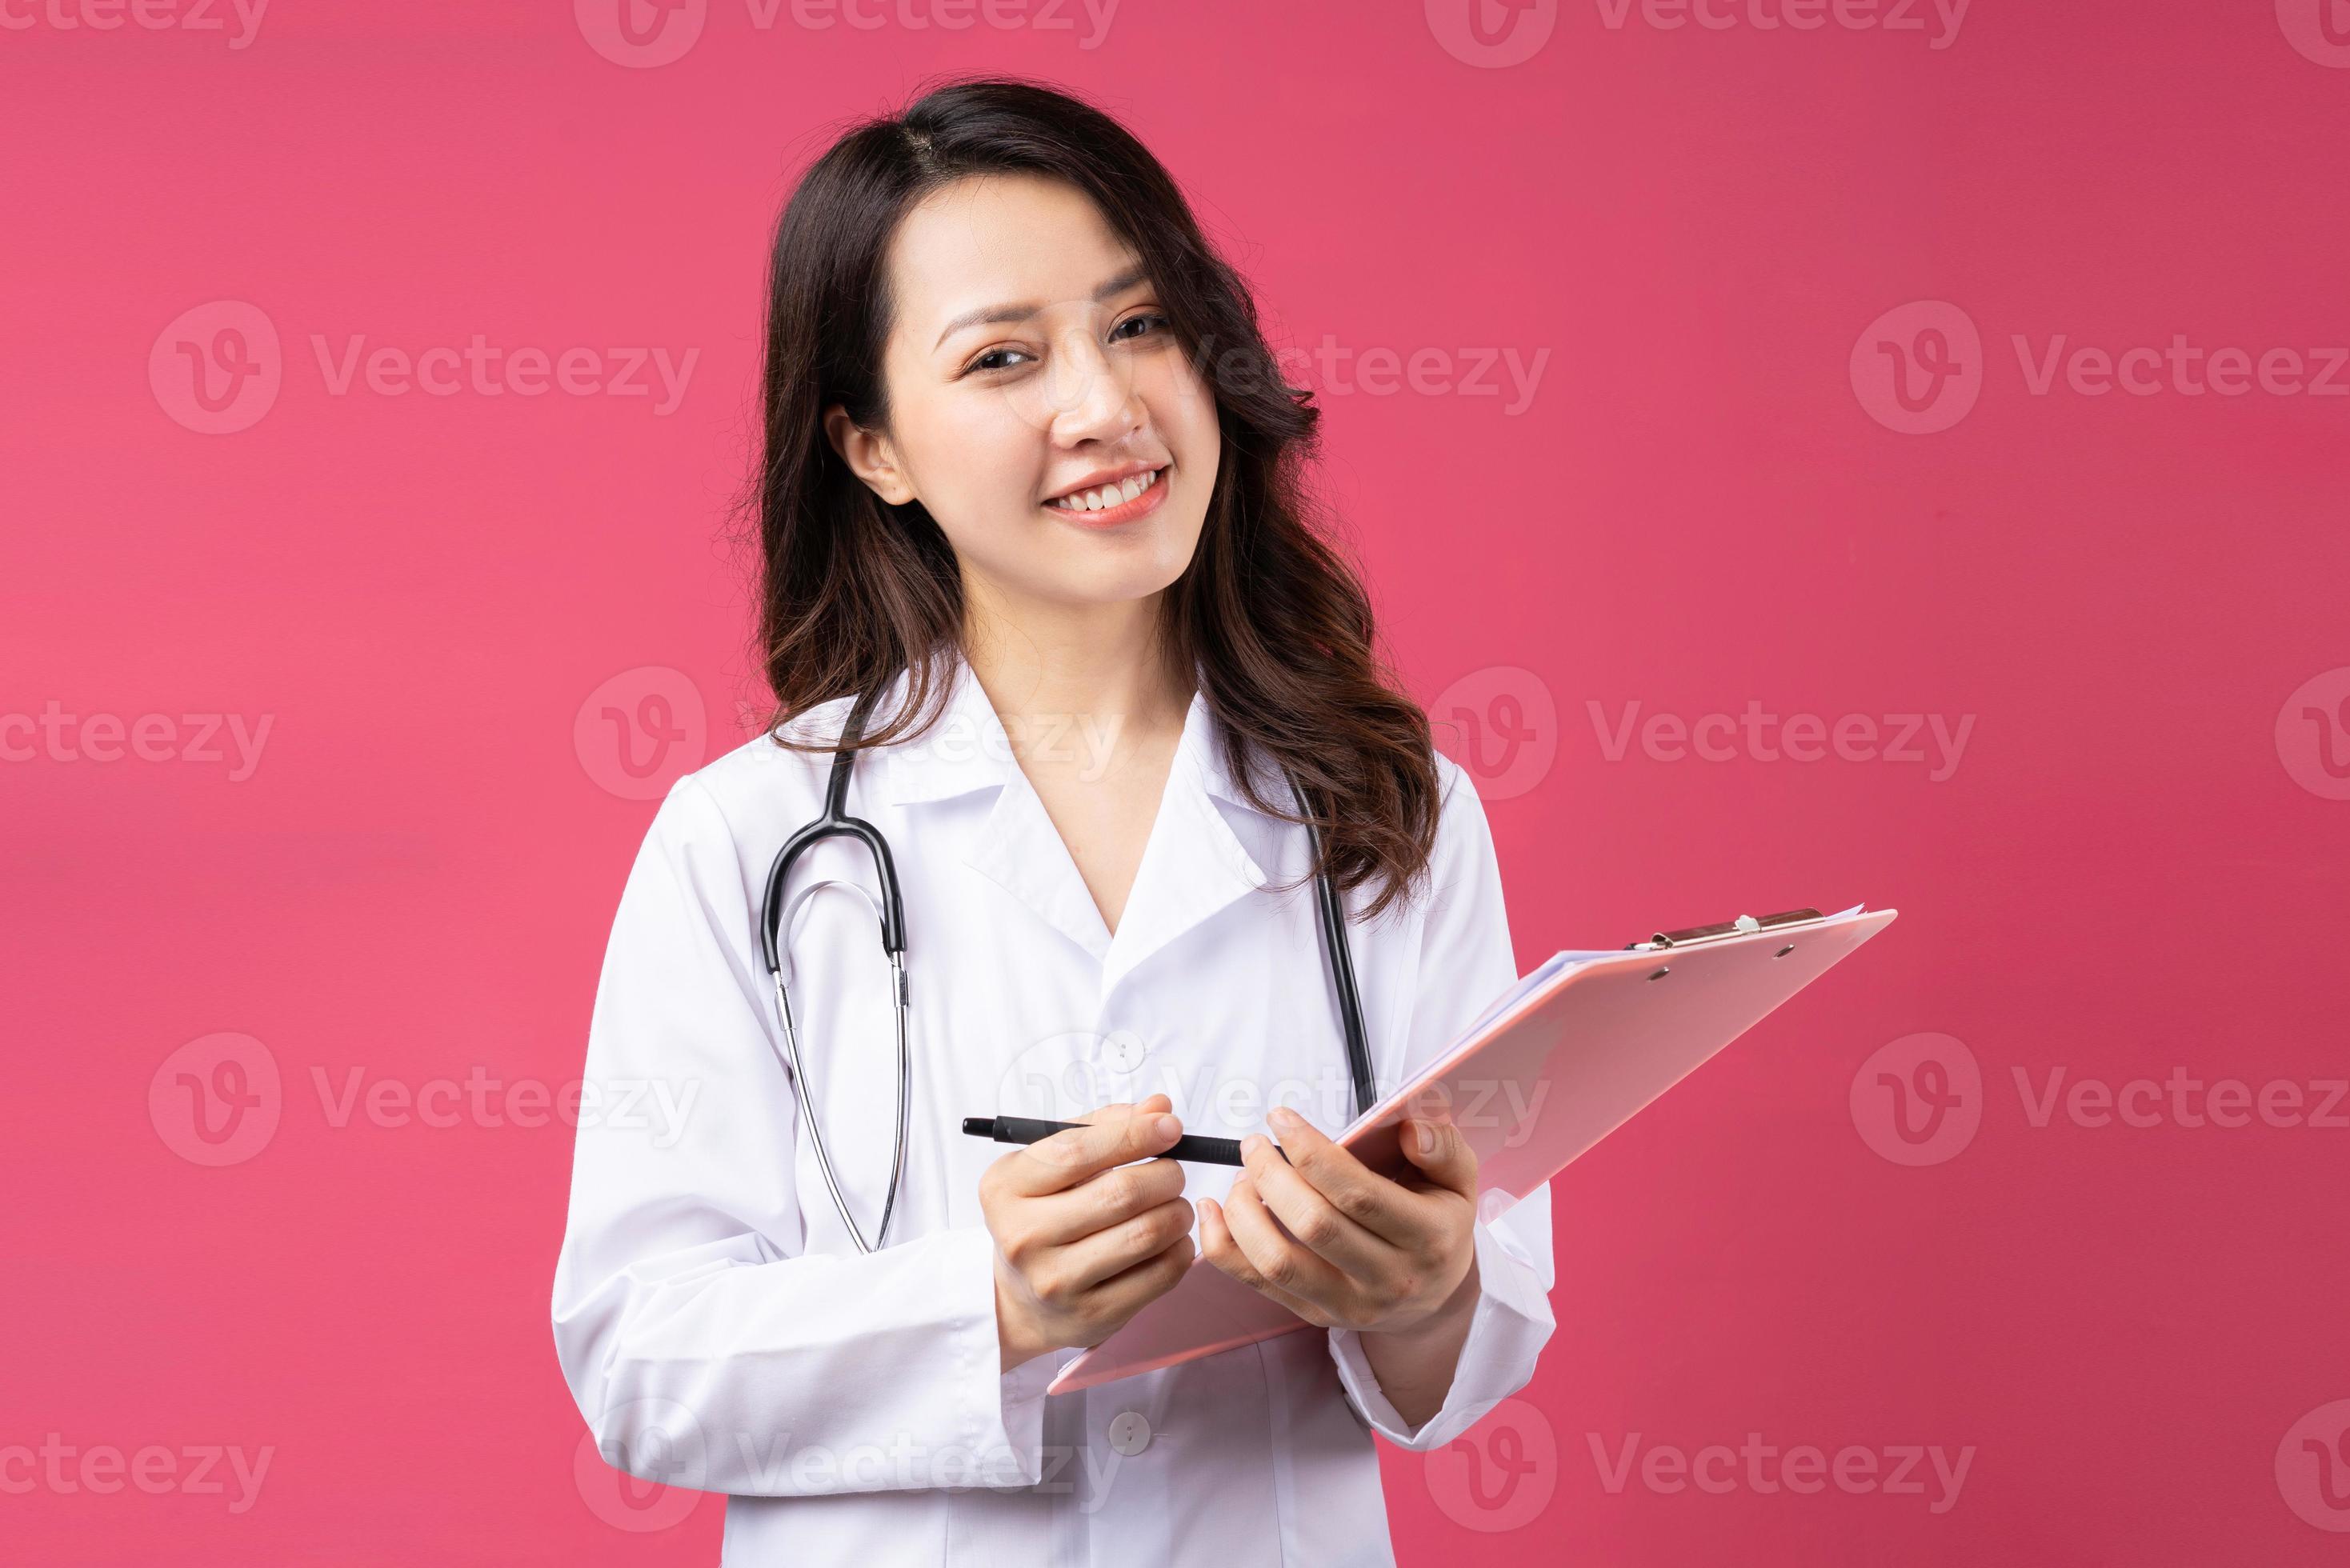 giovane dottoressa asiatica con espressione allegra sullo sfondo foto